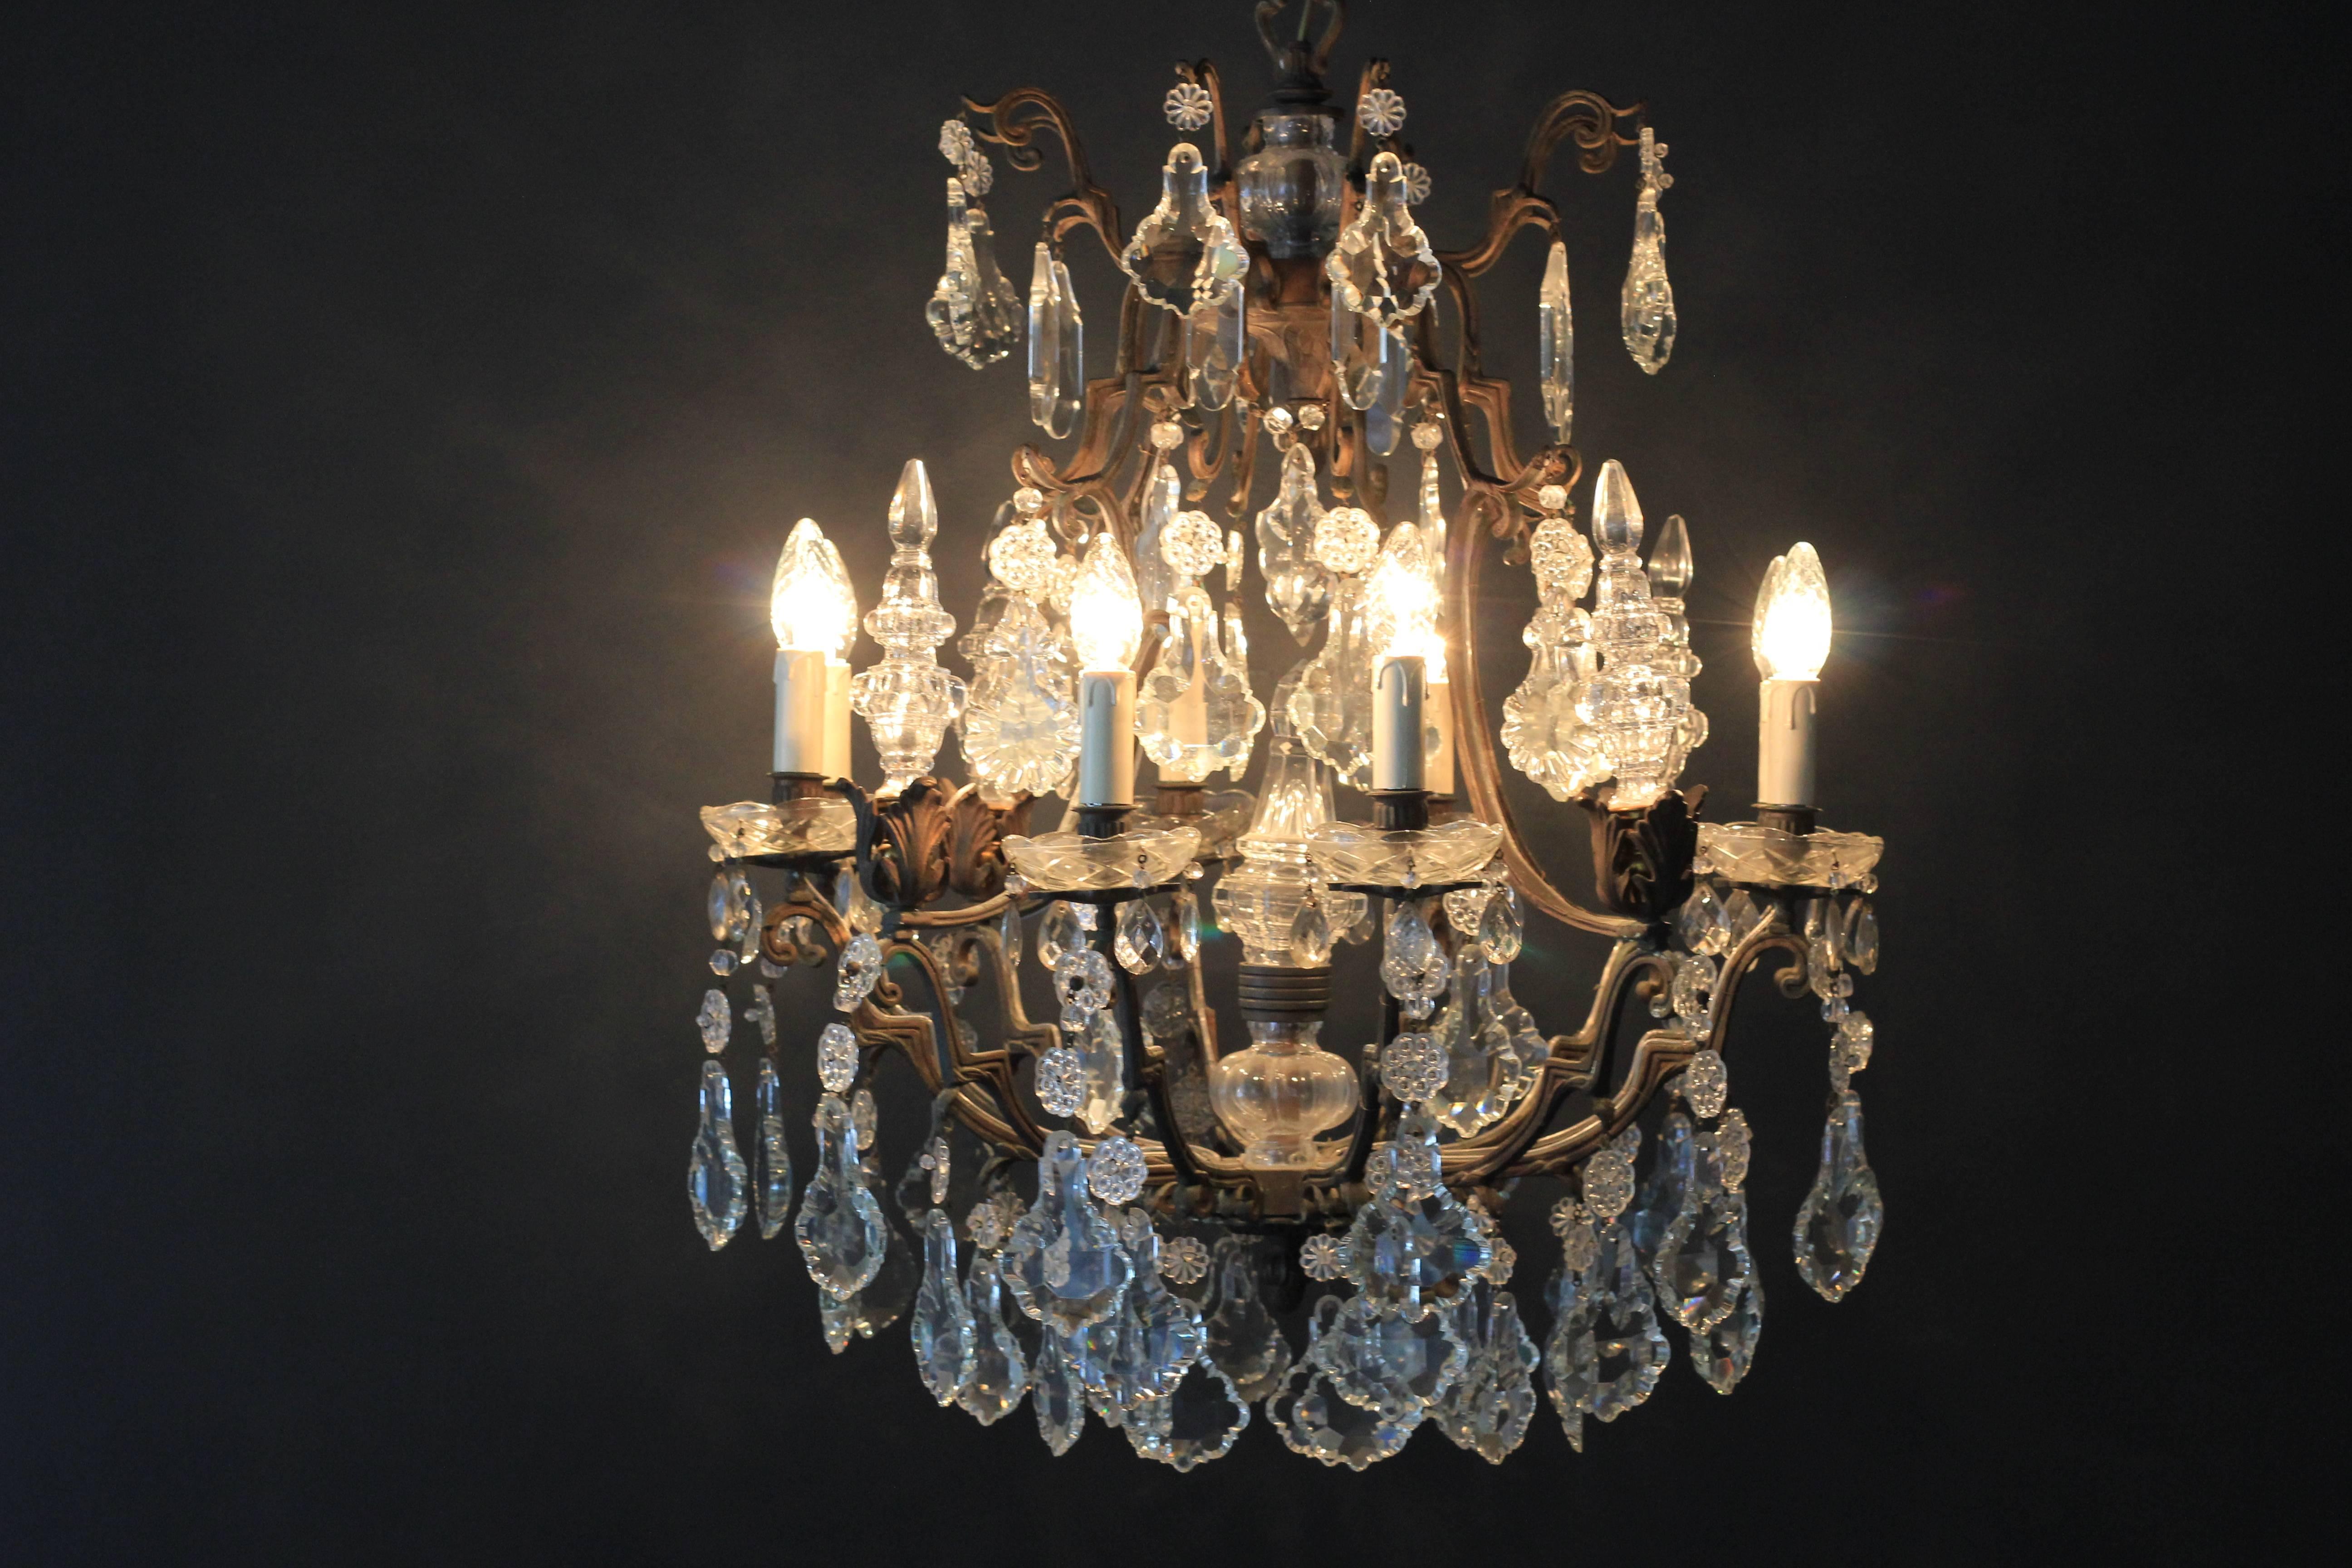 Fine Rarity Crystal Chandelier 1920 Lustre Antique Ceiling Lamp Art Nouveau WoW 2